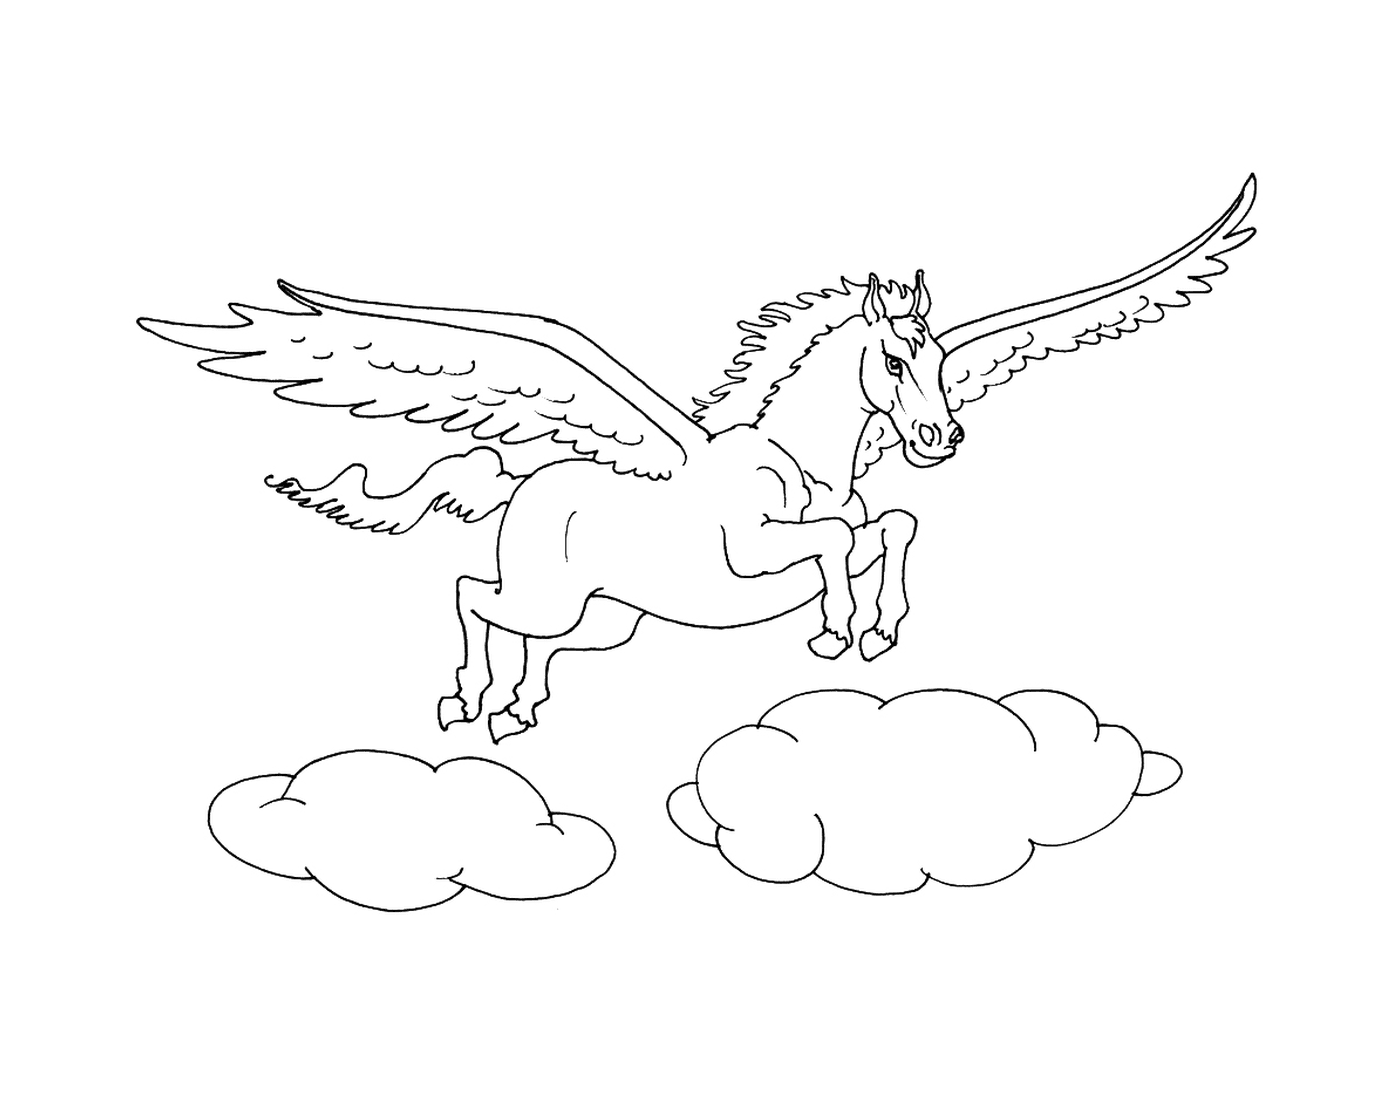  cavallo alato che vola sopra le nuvole 